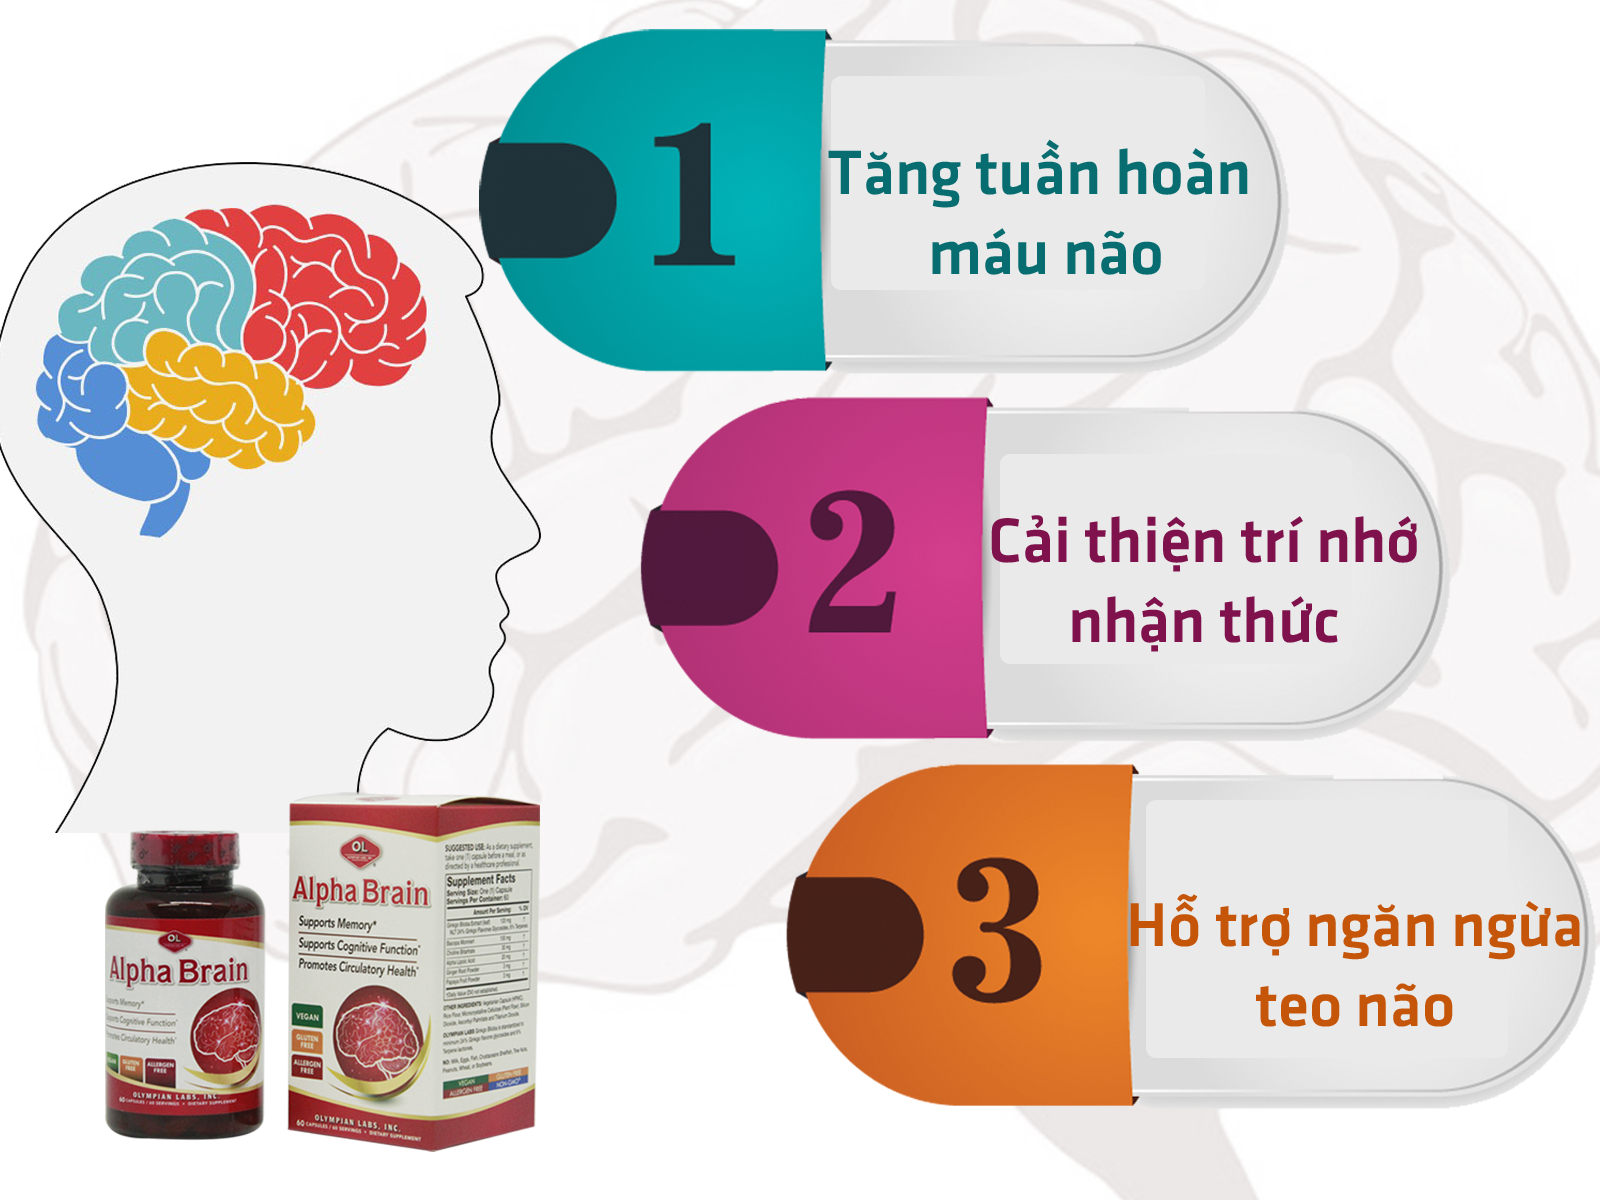 Alpha Brain được đánh giá là sản phẩm hàng đầu trên thị trường hiện nay với công dụng tăng tuần hoàn máu não hiệu quả